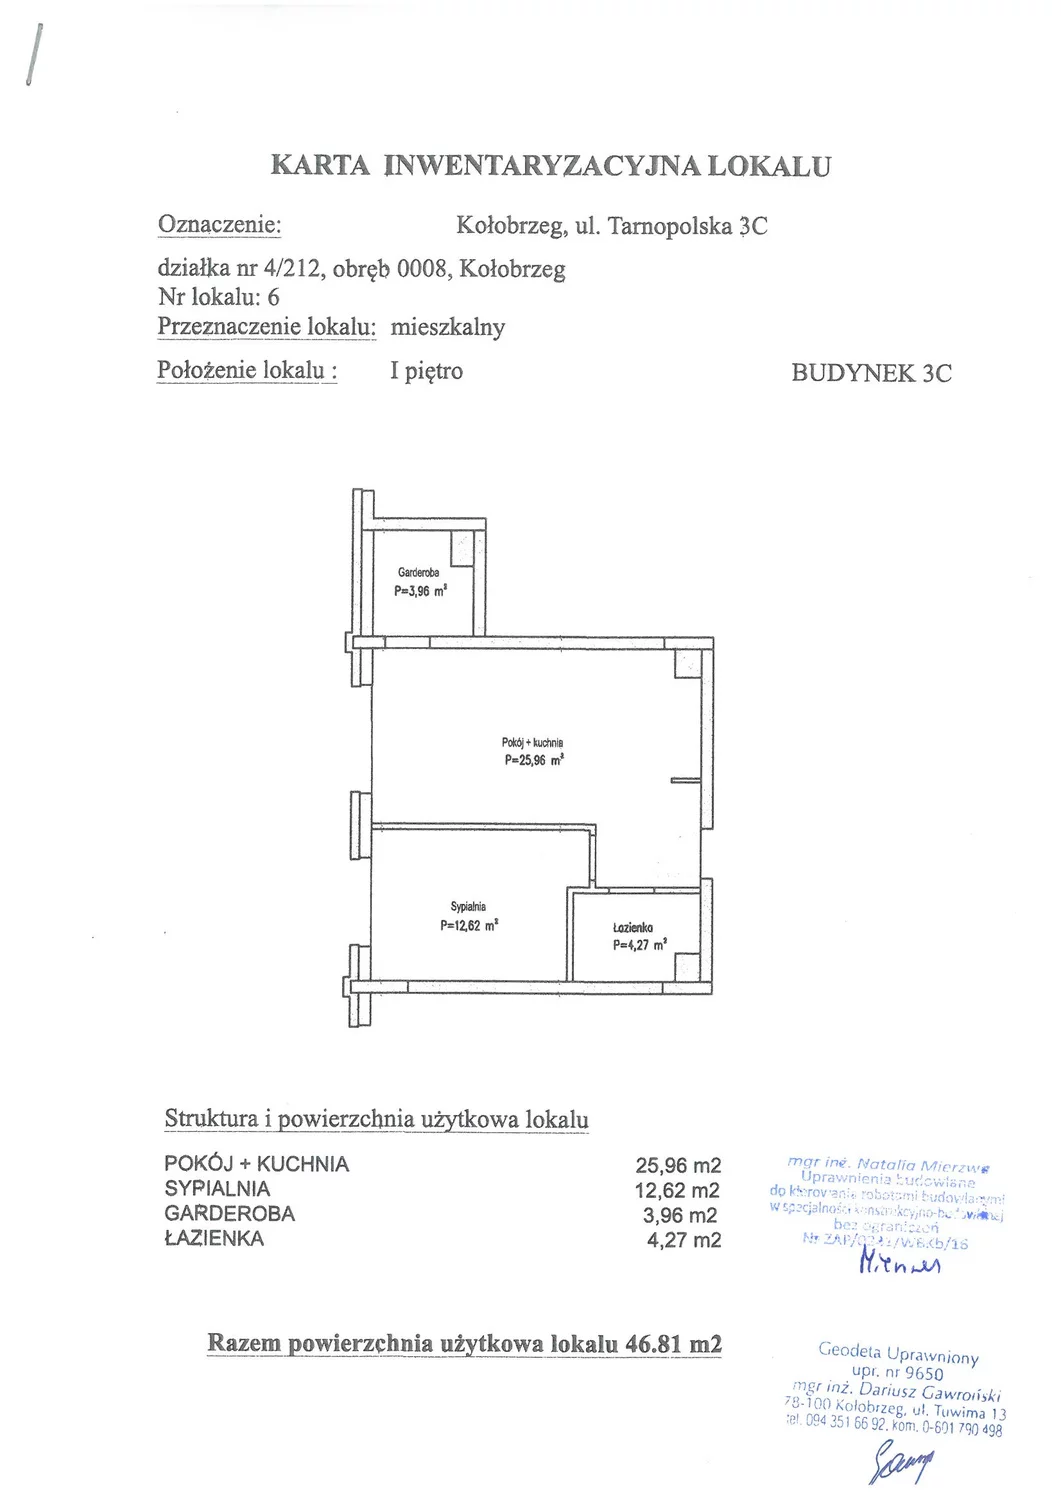 Apartament 46,81 m², piętro 1, oferta nr C6, Miejski Las, Kołobrzeg, Podczele, ul. Tarnopolska 3 A, B, C